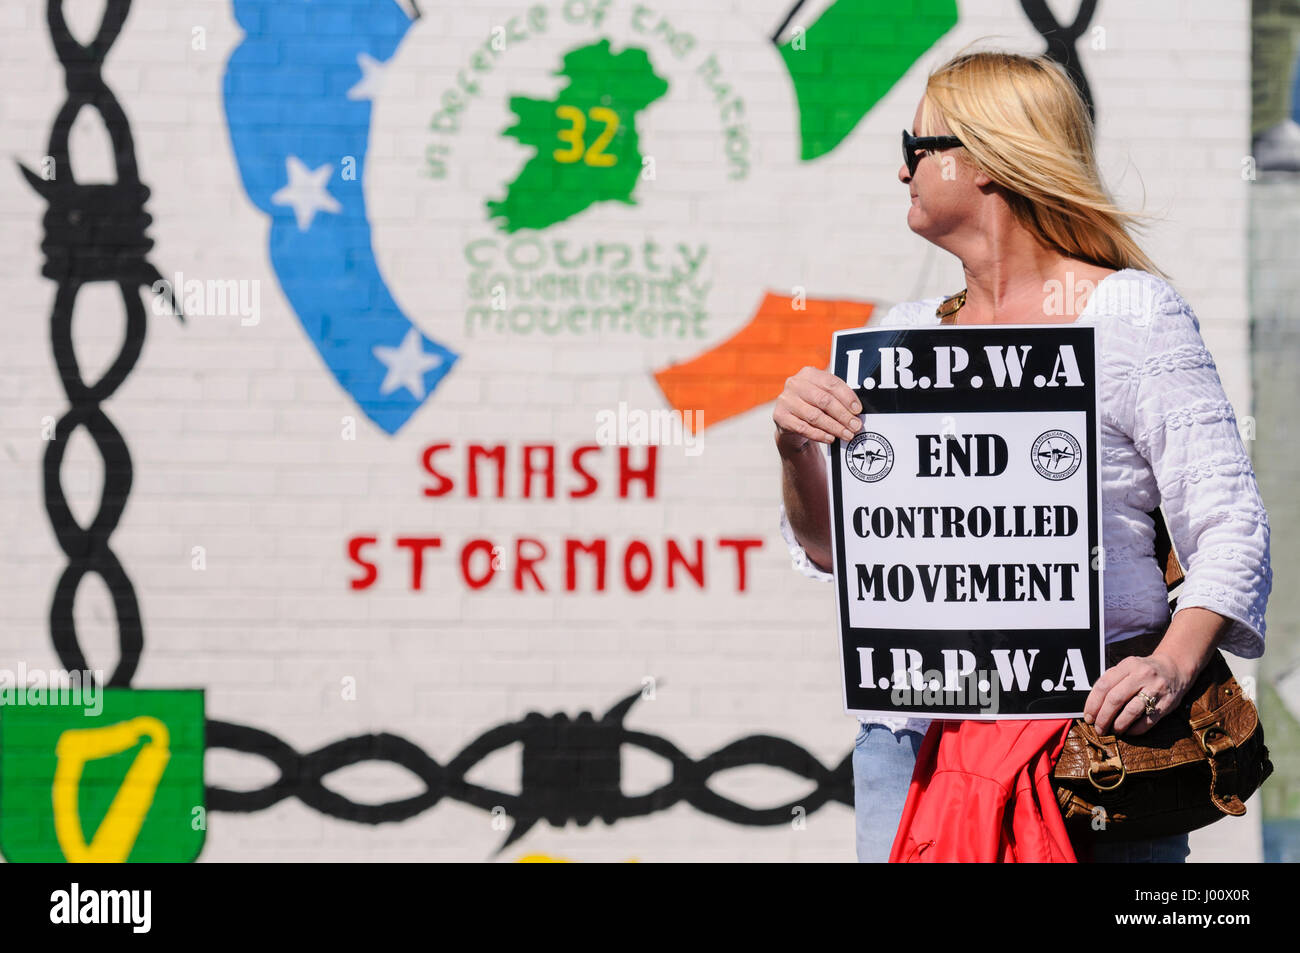 Nordirland. 08 Apr 2017 - irisch republikanischen Gefangenen Welfare Association hält weiße Linie Mahnwache gegen die Bedingungen in Nordirland Gefängnisse. Stockfoto